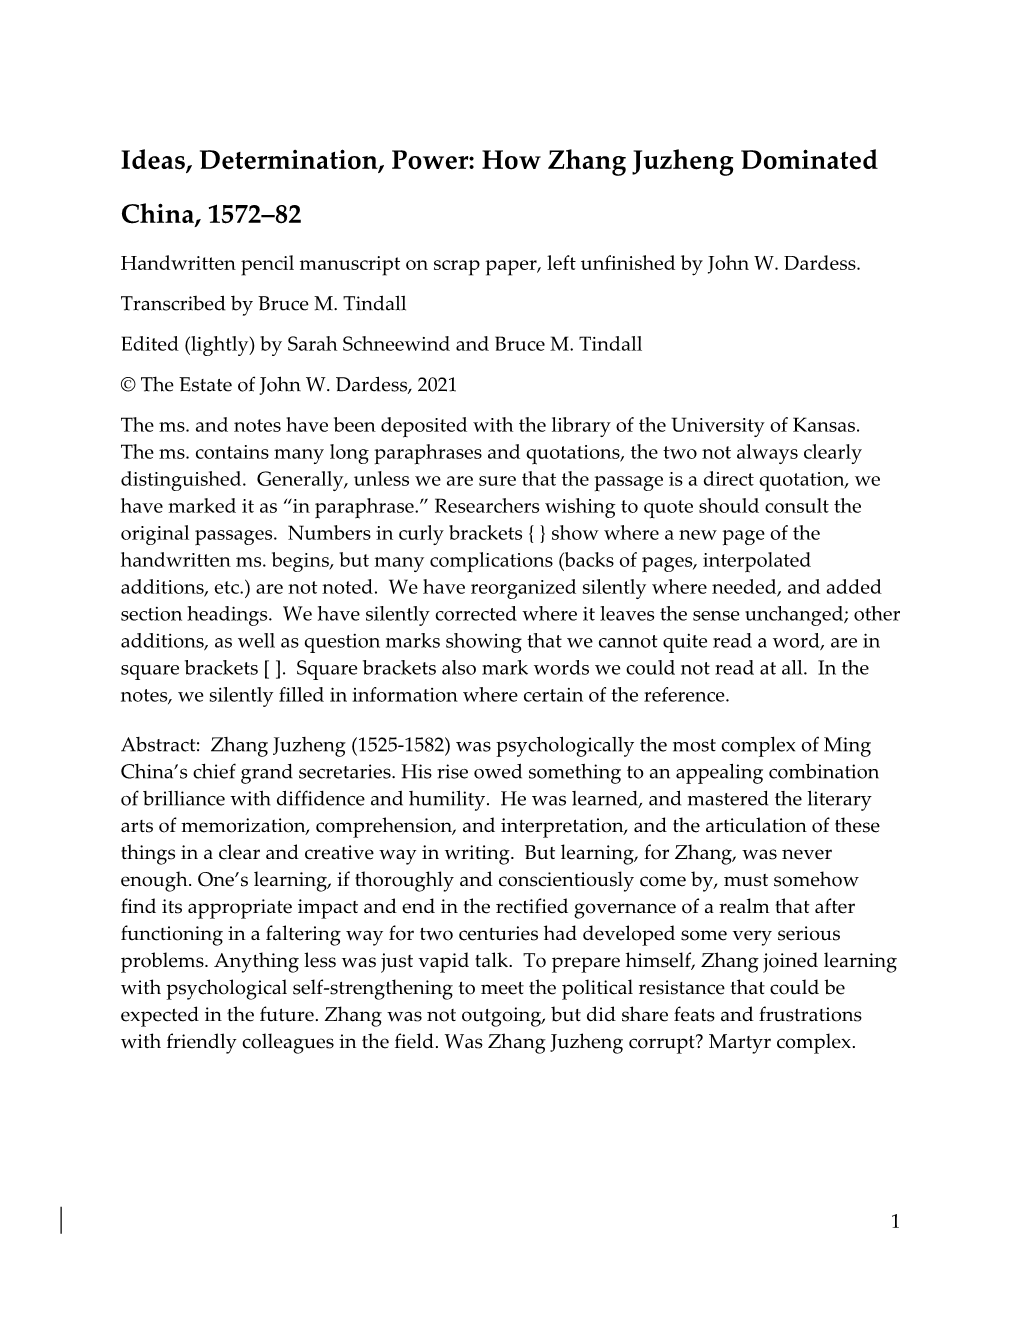 How Zhang Juzheng Dominated China, 1572‒82